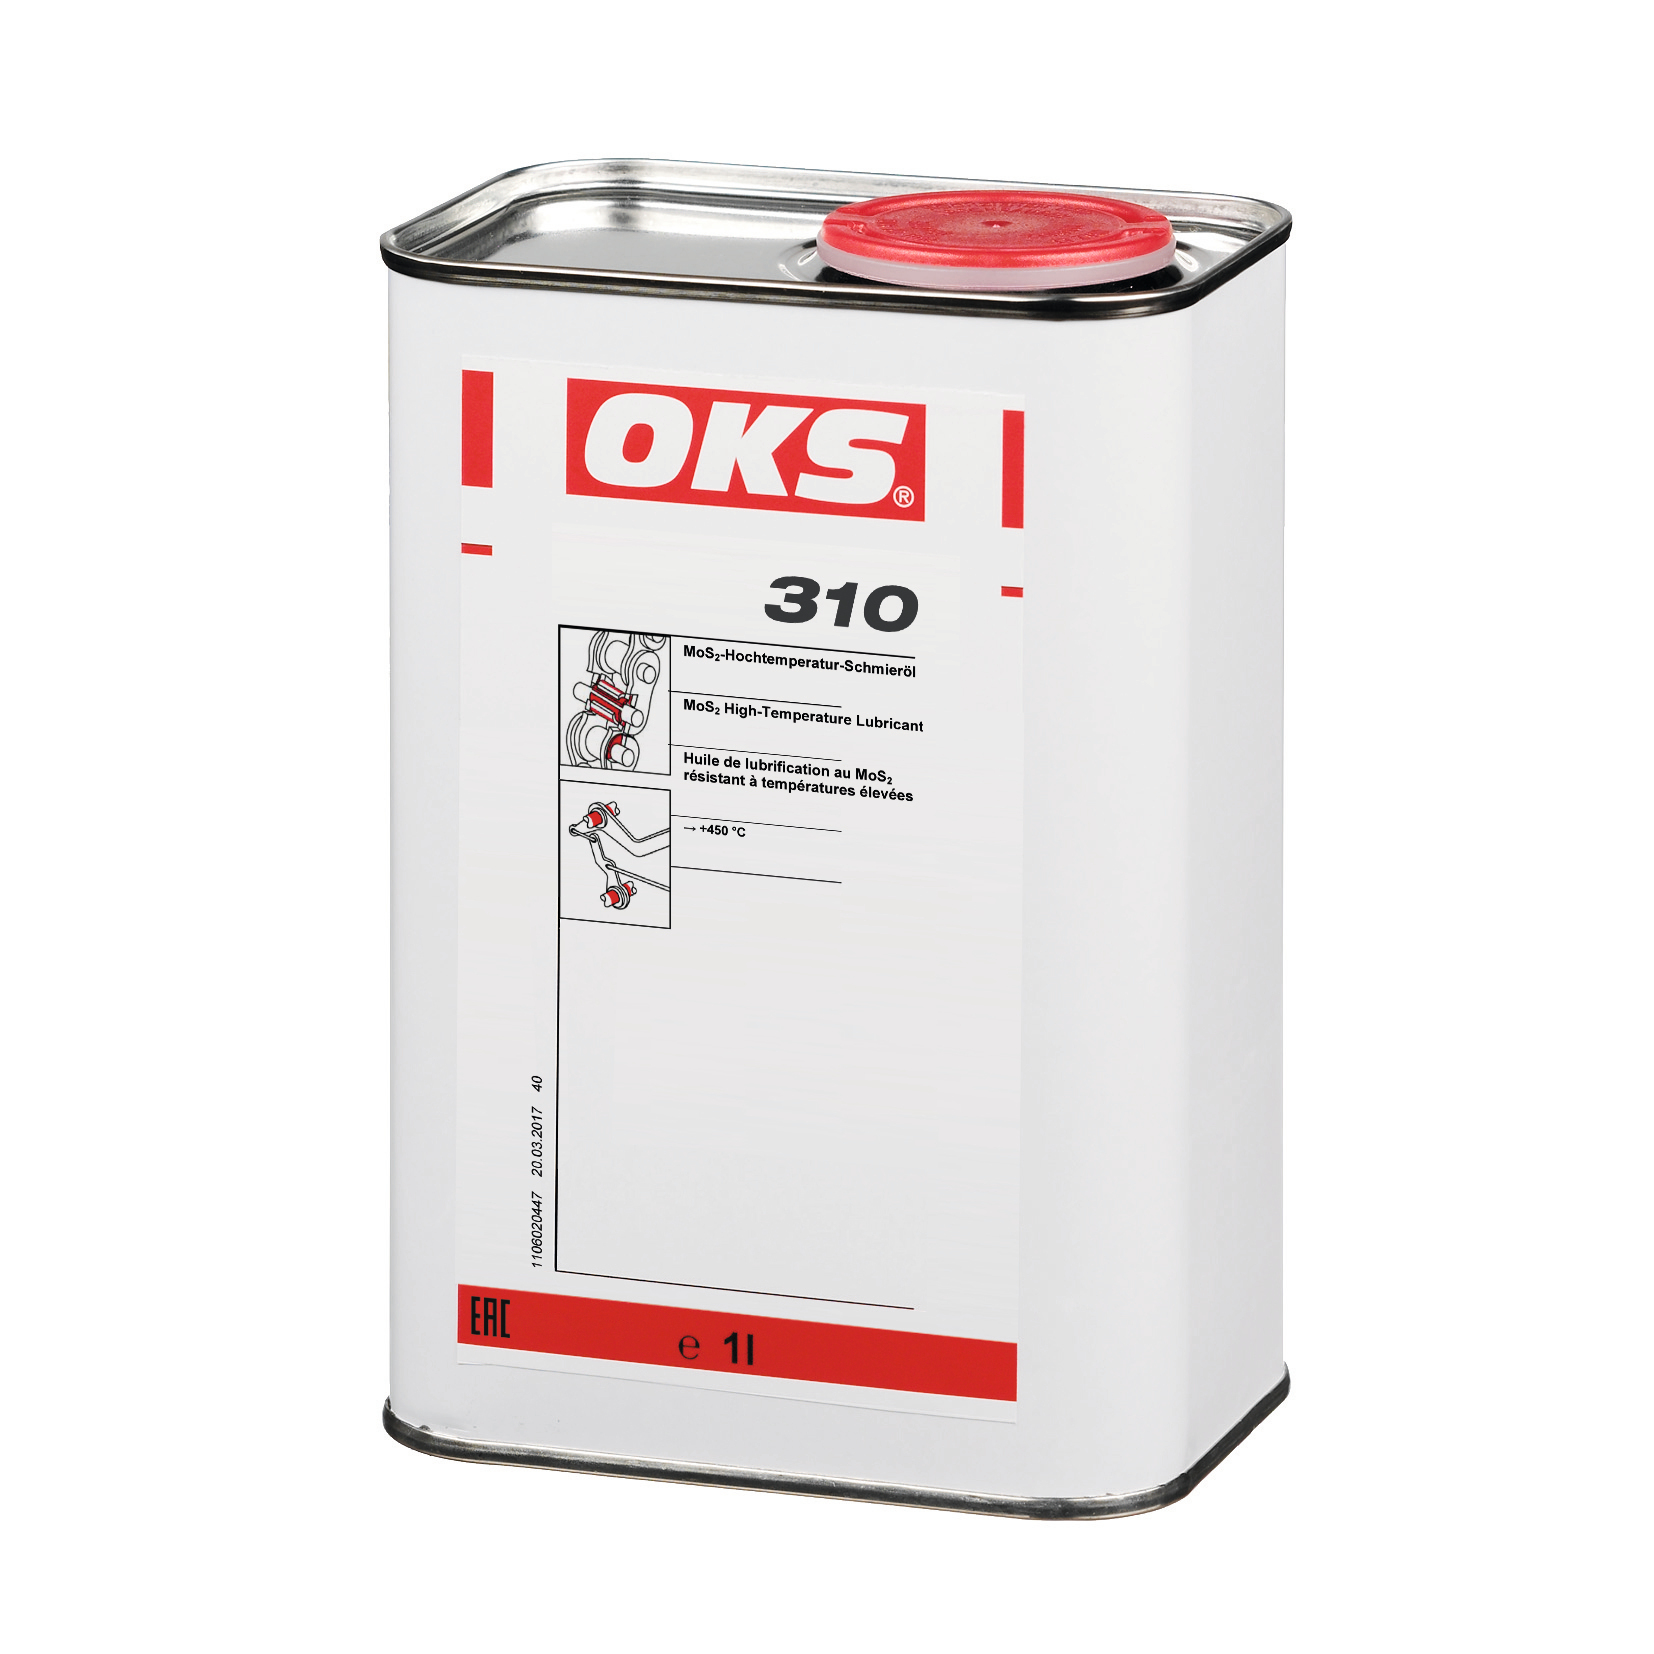 OKS 310 MoS2 Smeerolie voor Hoge Temperaturen, 1 kg